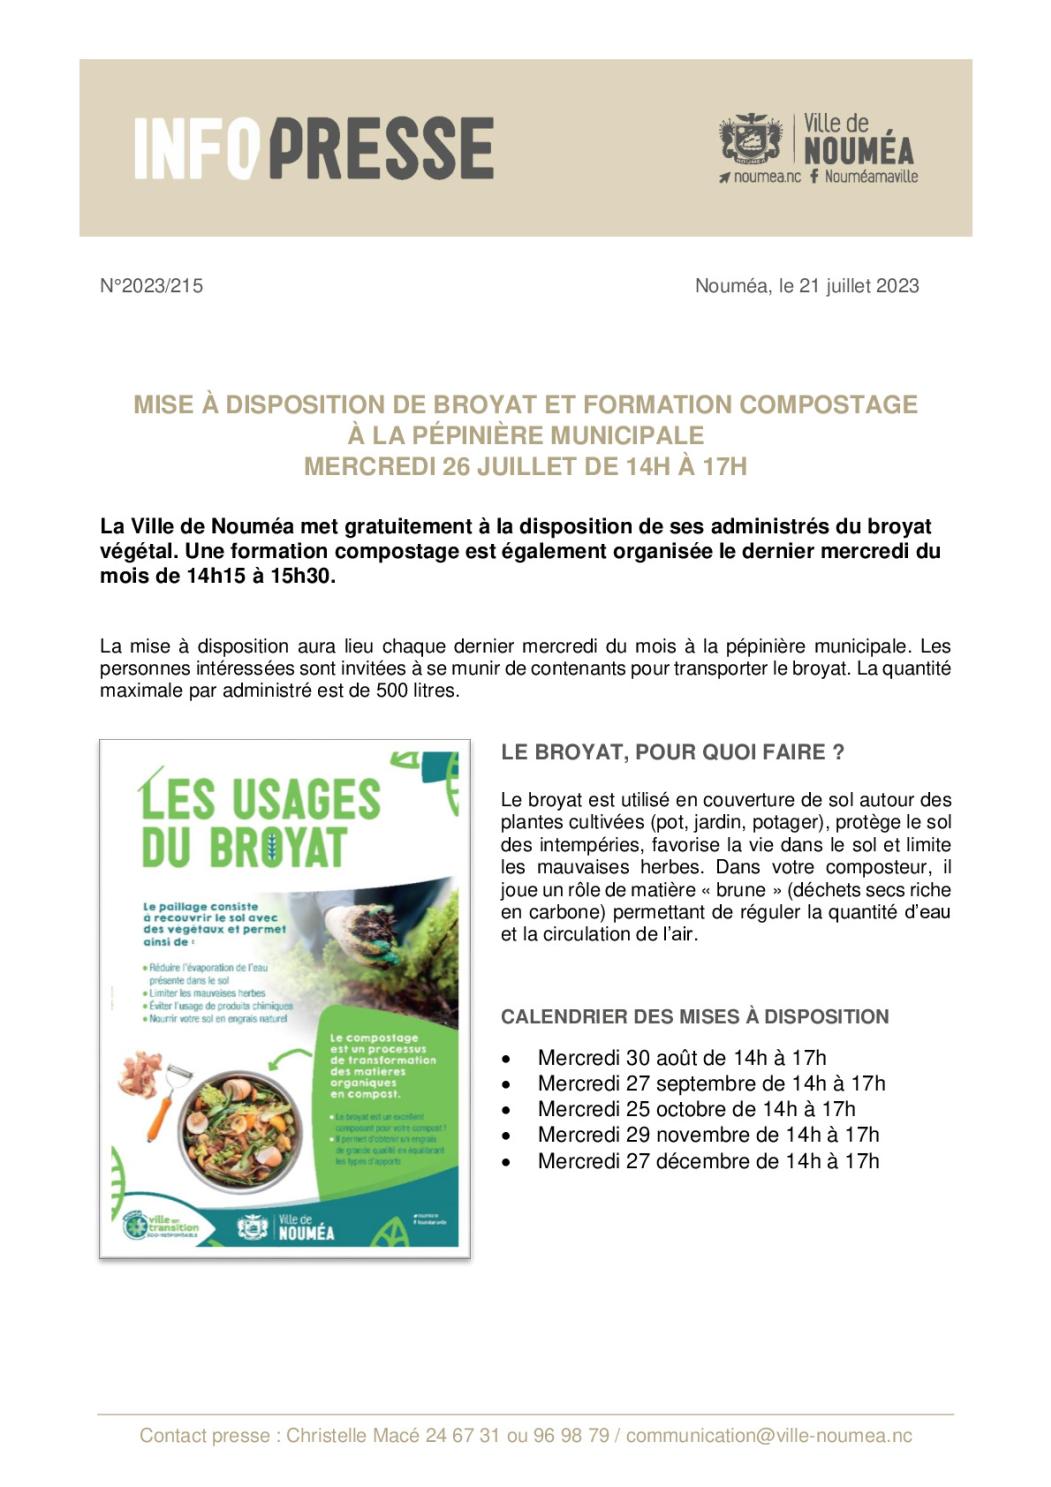 IP 215 Mise a disposition mensuelle de broyat et formation compostage.pdf